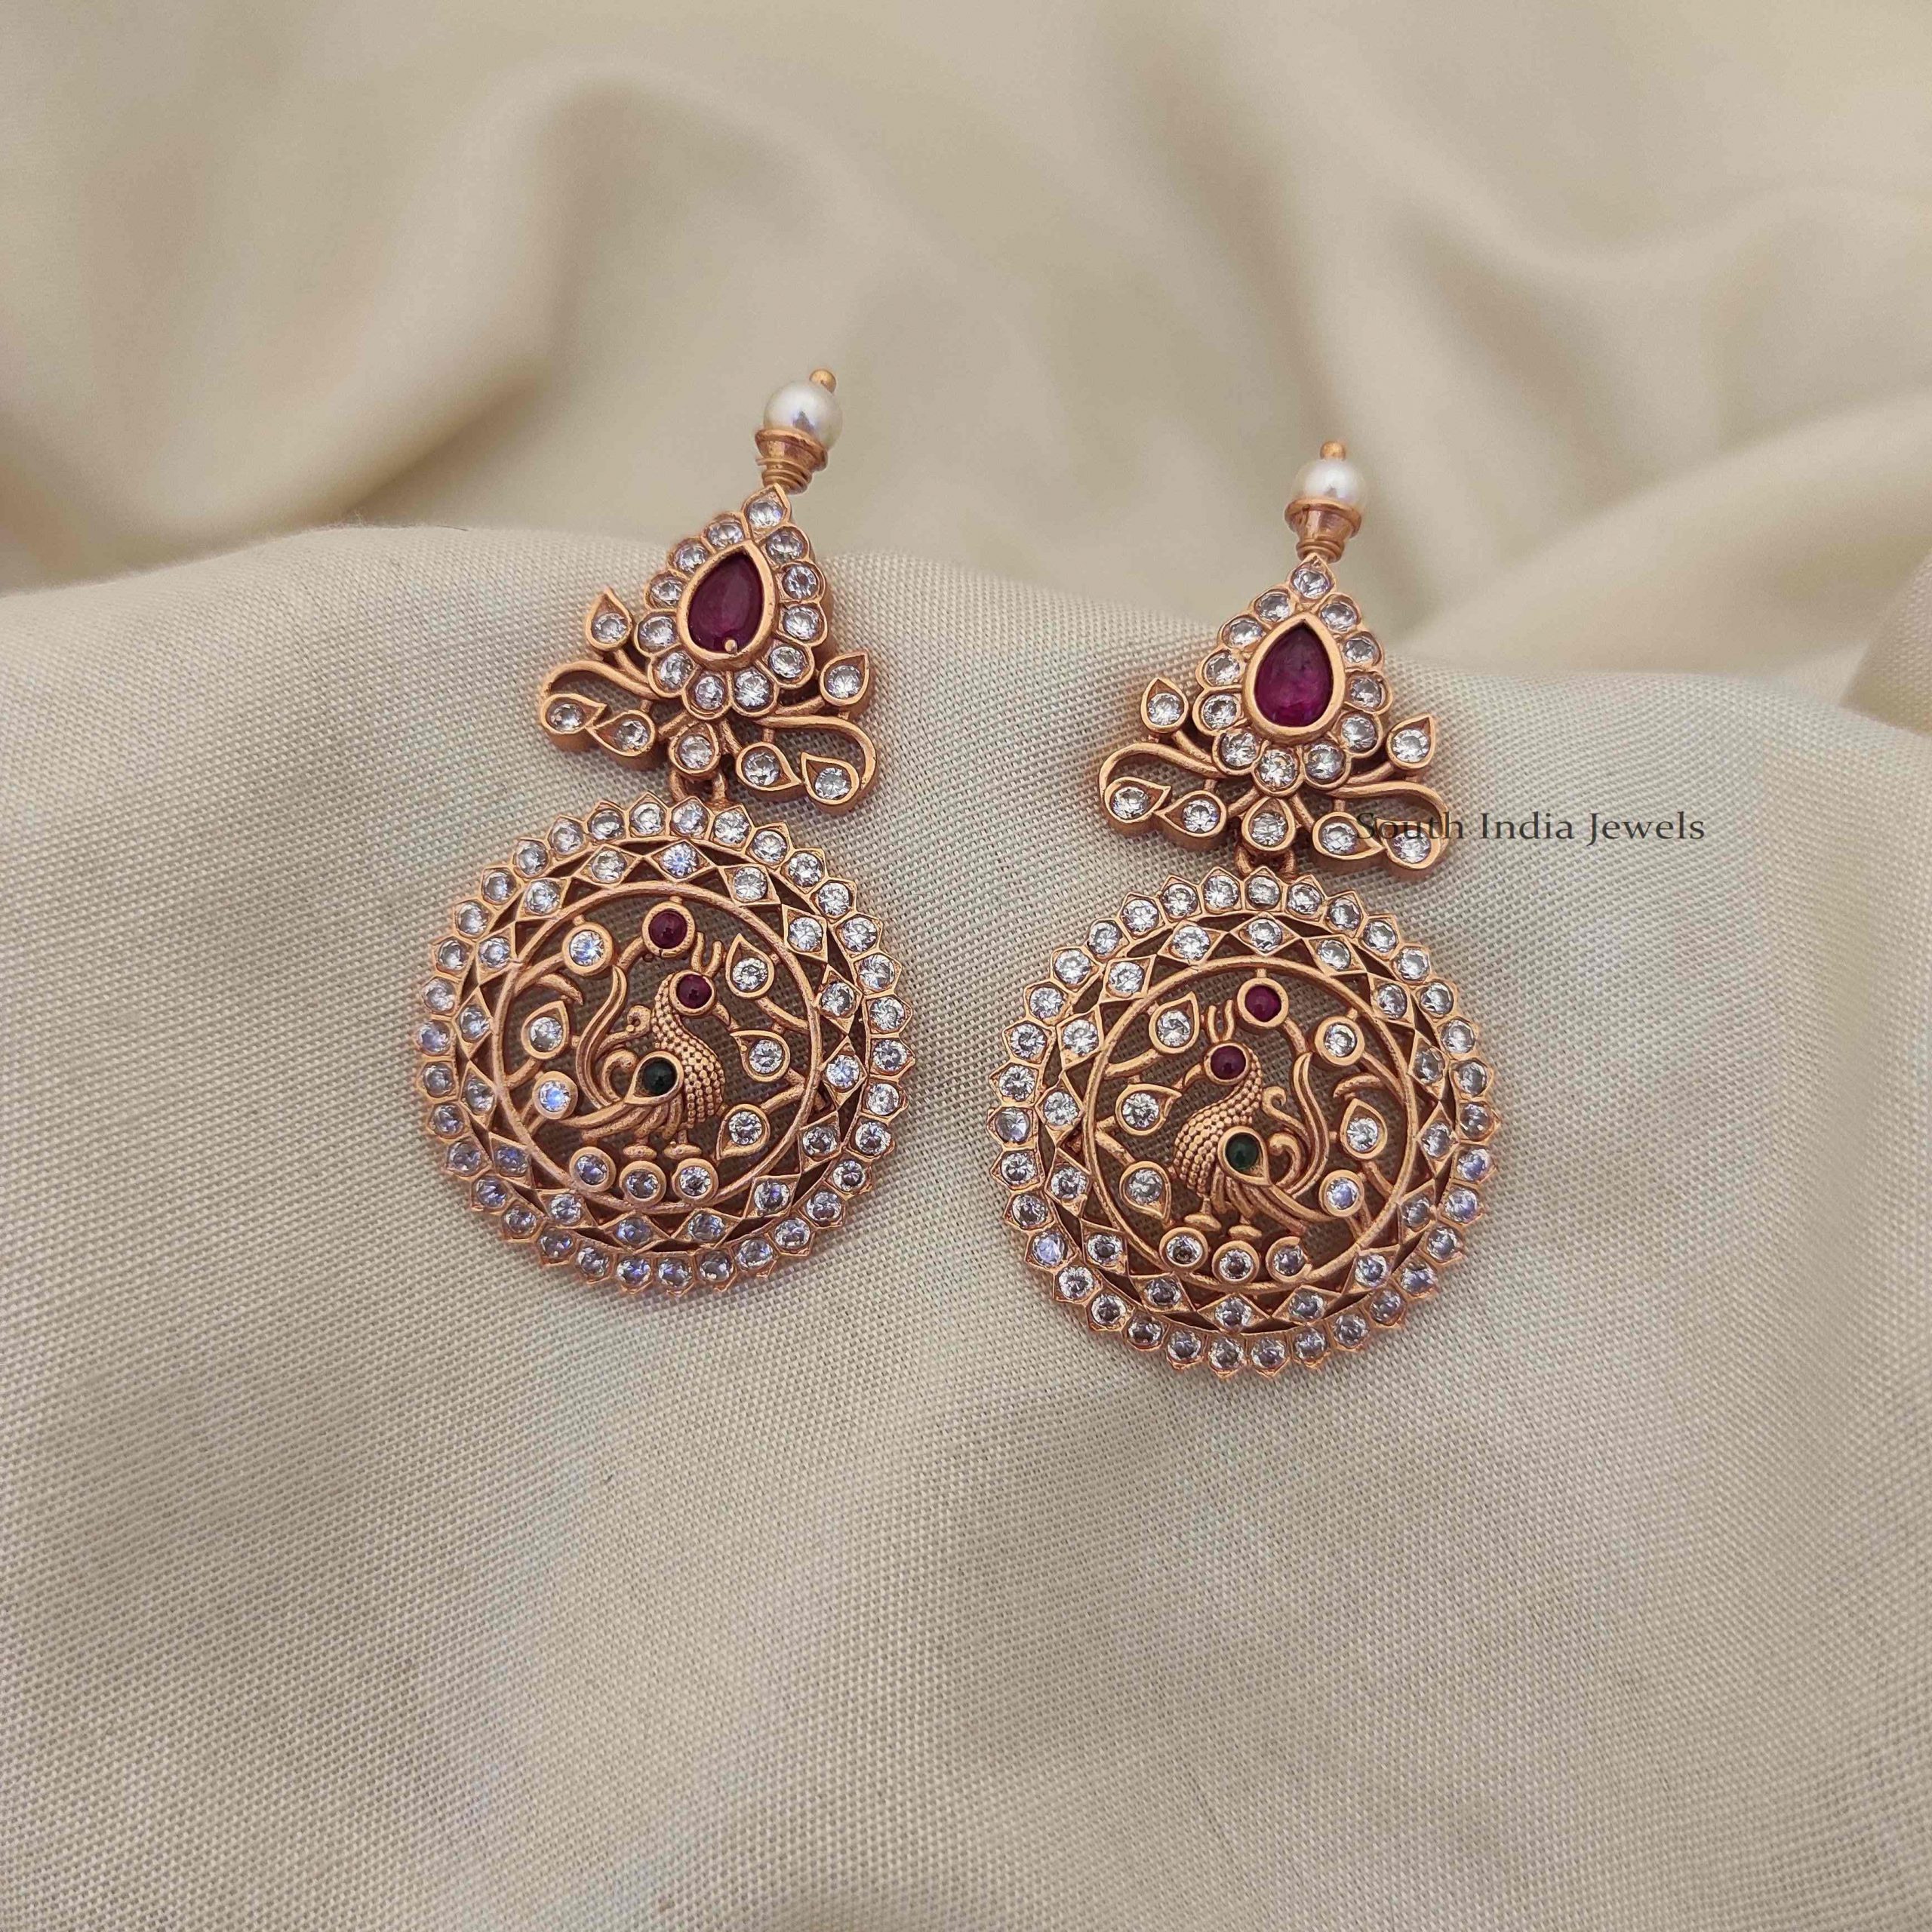 Beautiful Mango Design Choker - South India Jewels